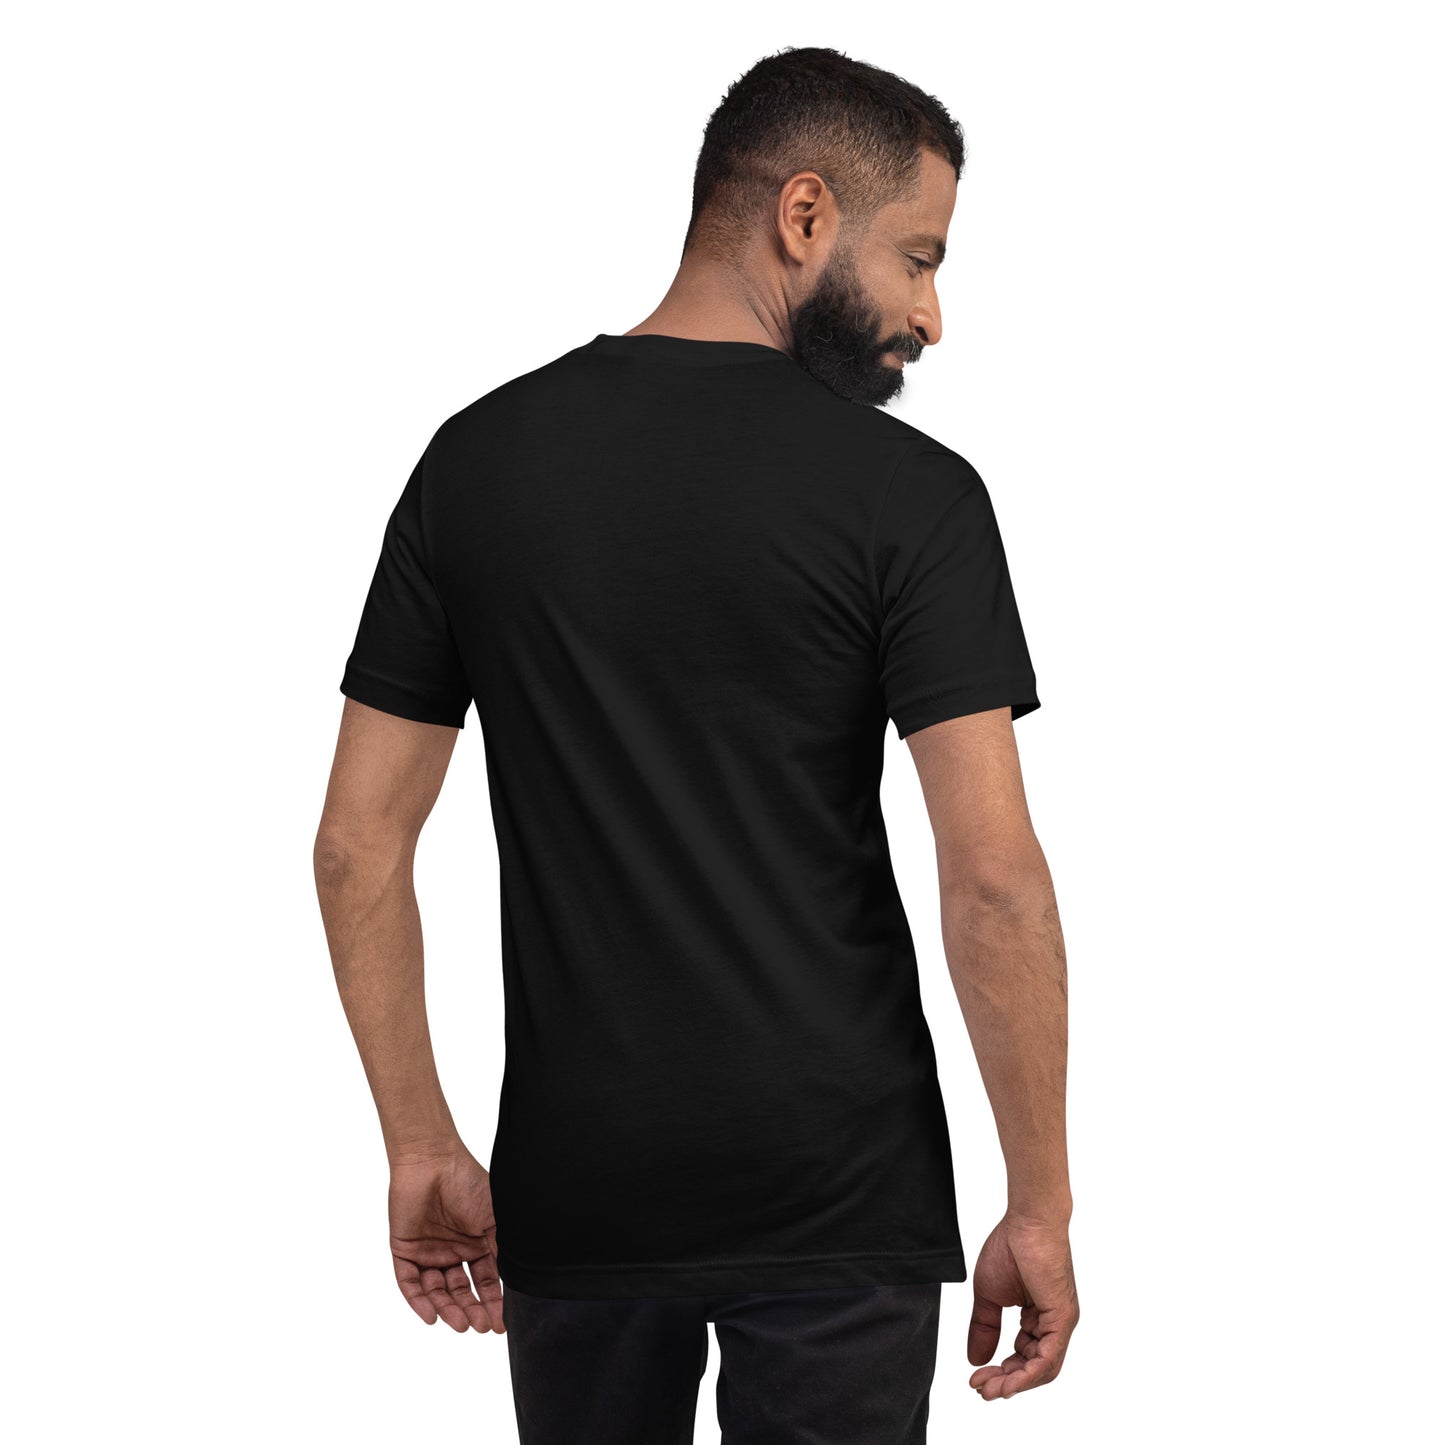 PURRFECT NFT Short-Sleeve Unisex Plus Size T-Shirt XS-5XL